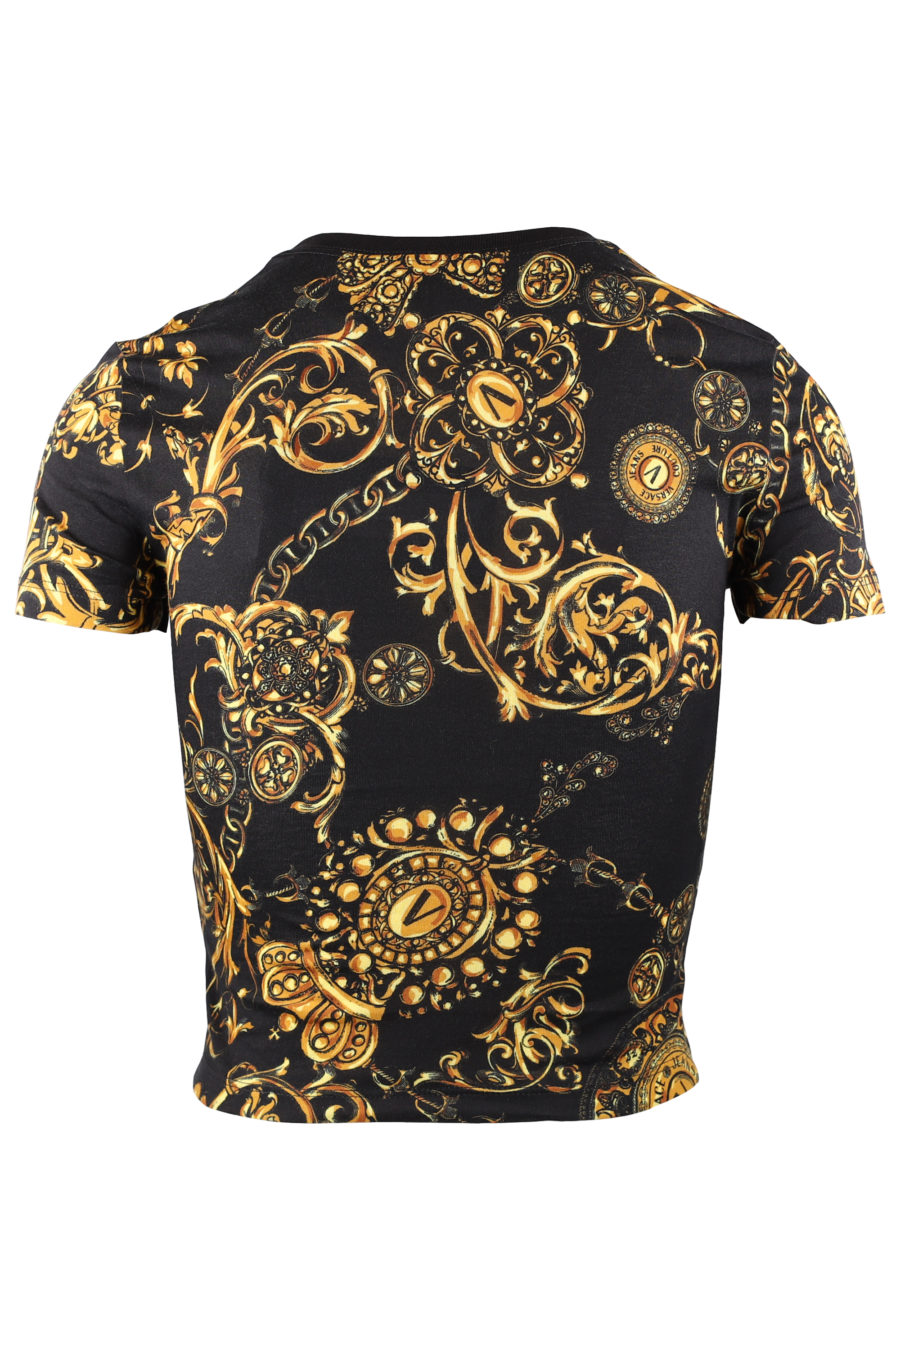 Black t-shirt with baroque print - ad0d75b4007aeef3e74f8ad08ac0f6305e64b65f